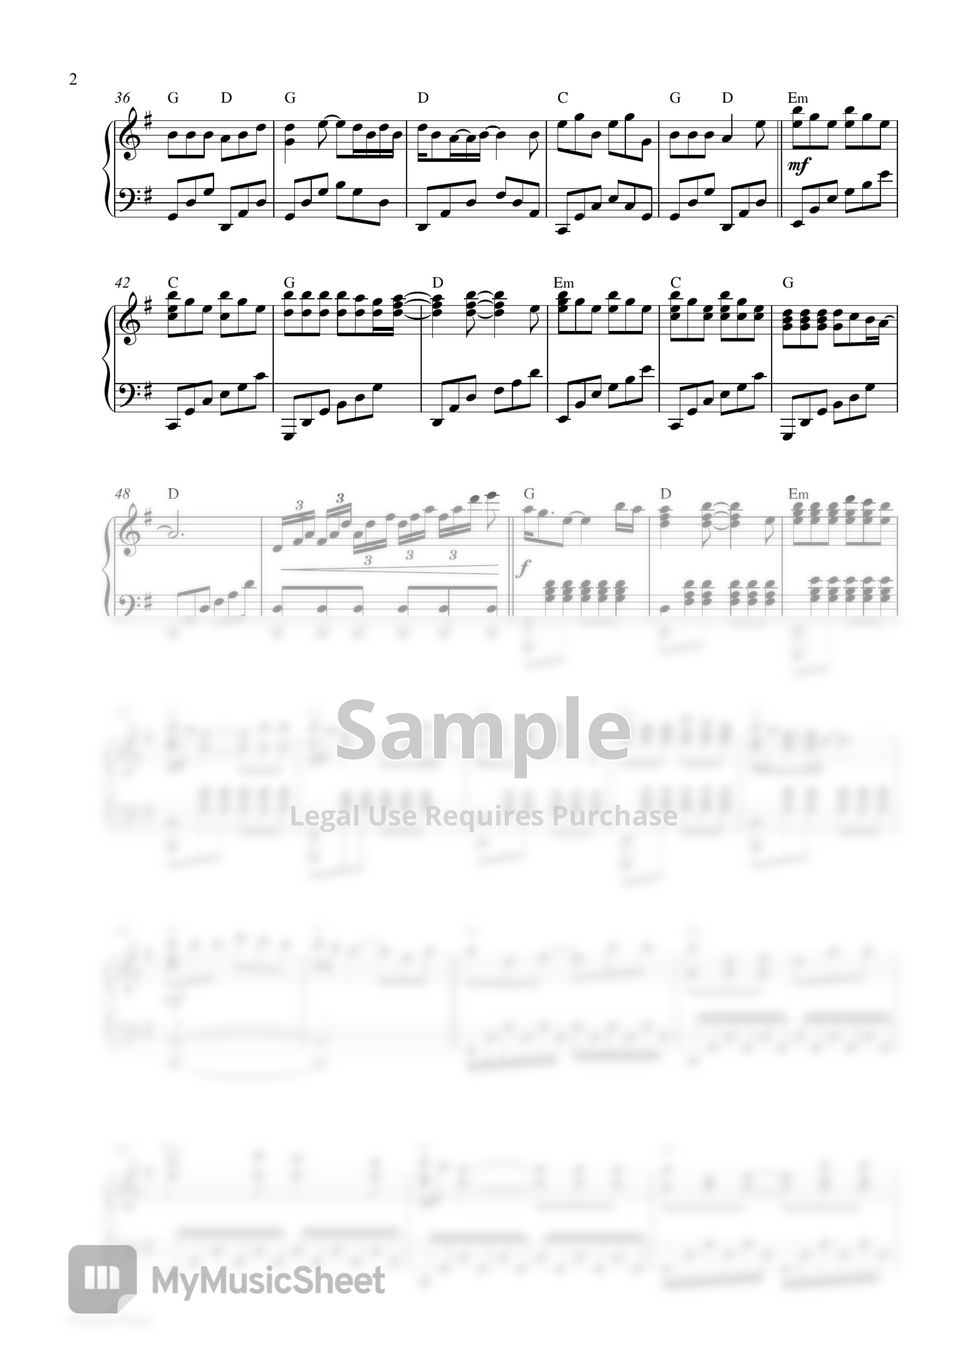 Lady Gaga (From Top Gun:Maverick) - Hold My Hand (Piano Sheet) by Pianella Piano